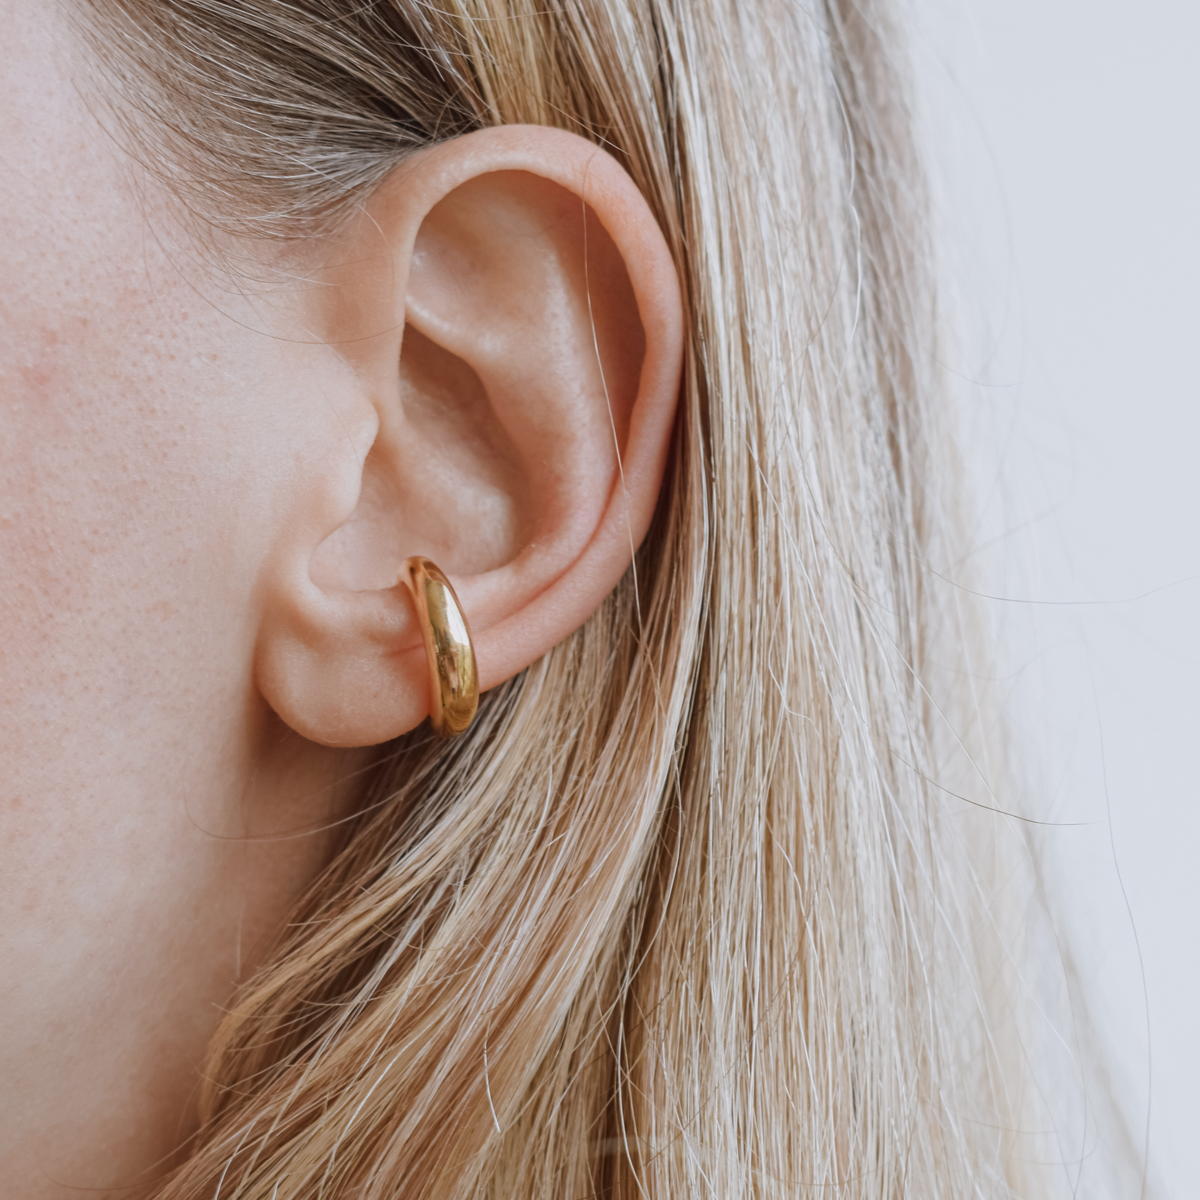 Beaded Ear Cuff Cartilage Hoop Earrings - Gold Plated - Oak & Luna